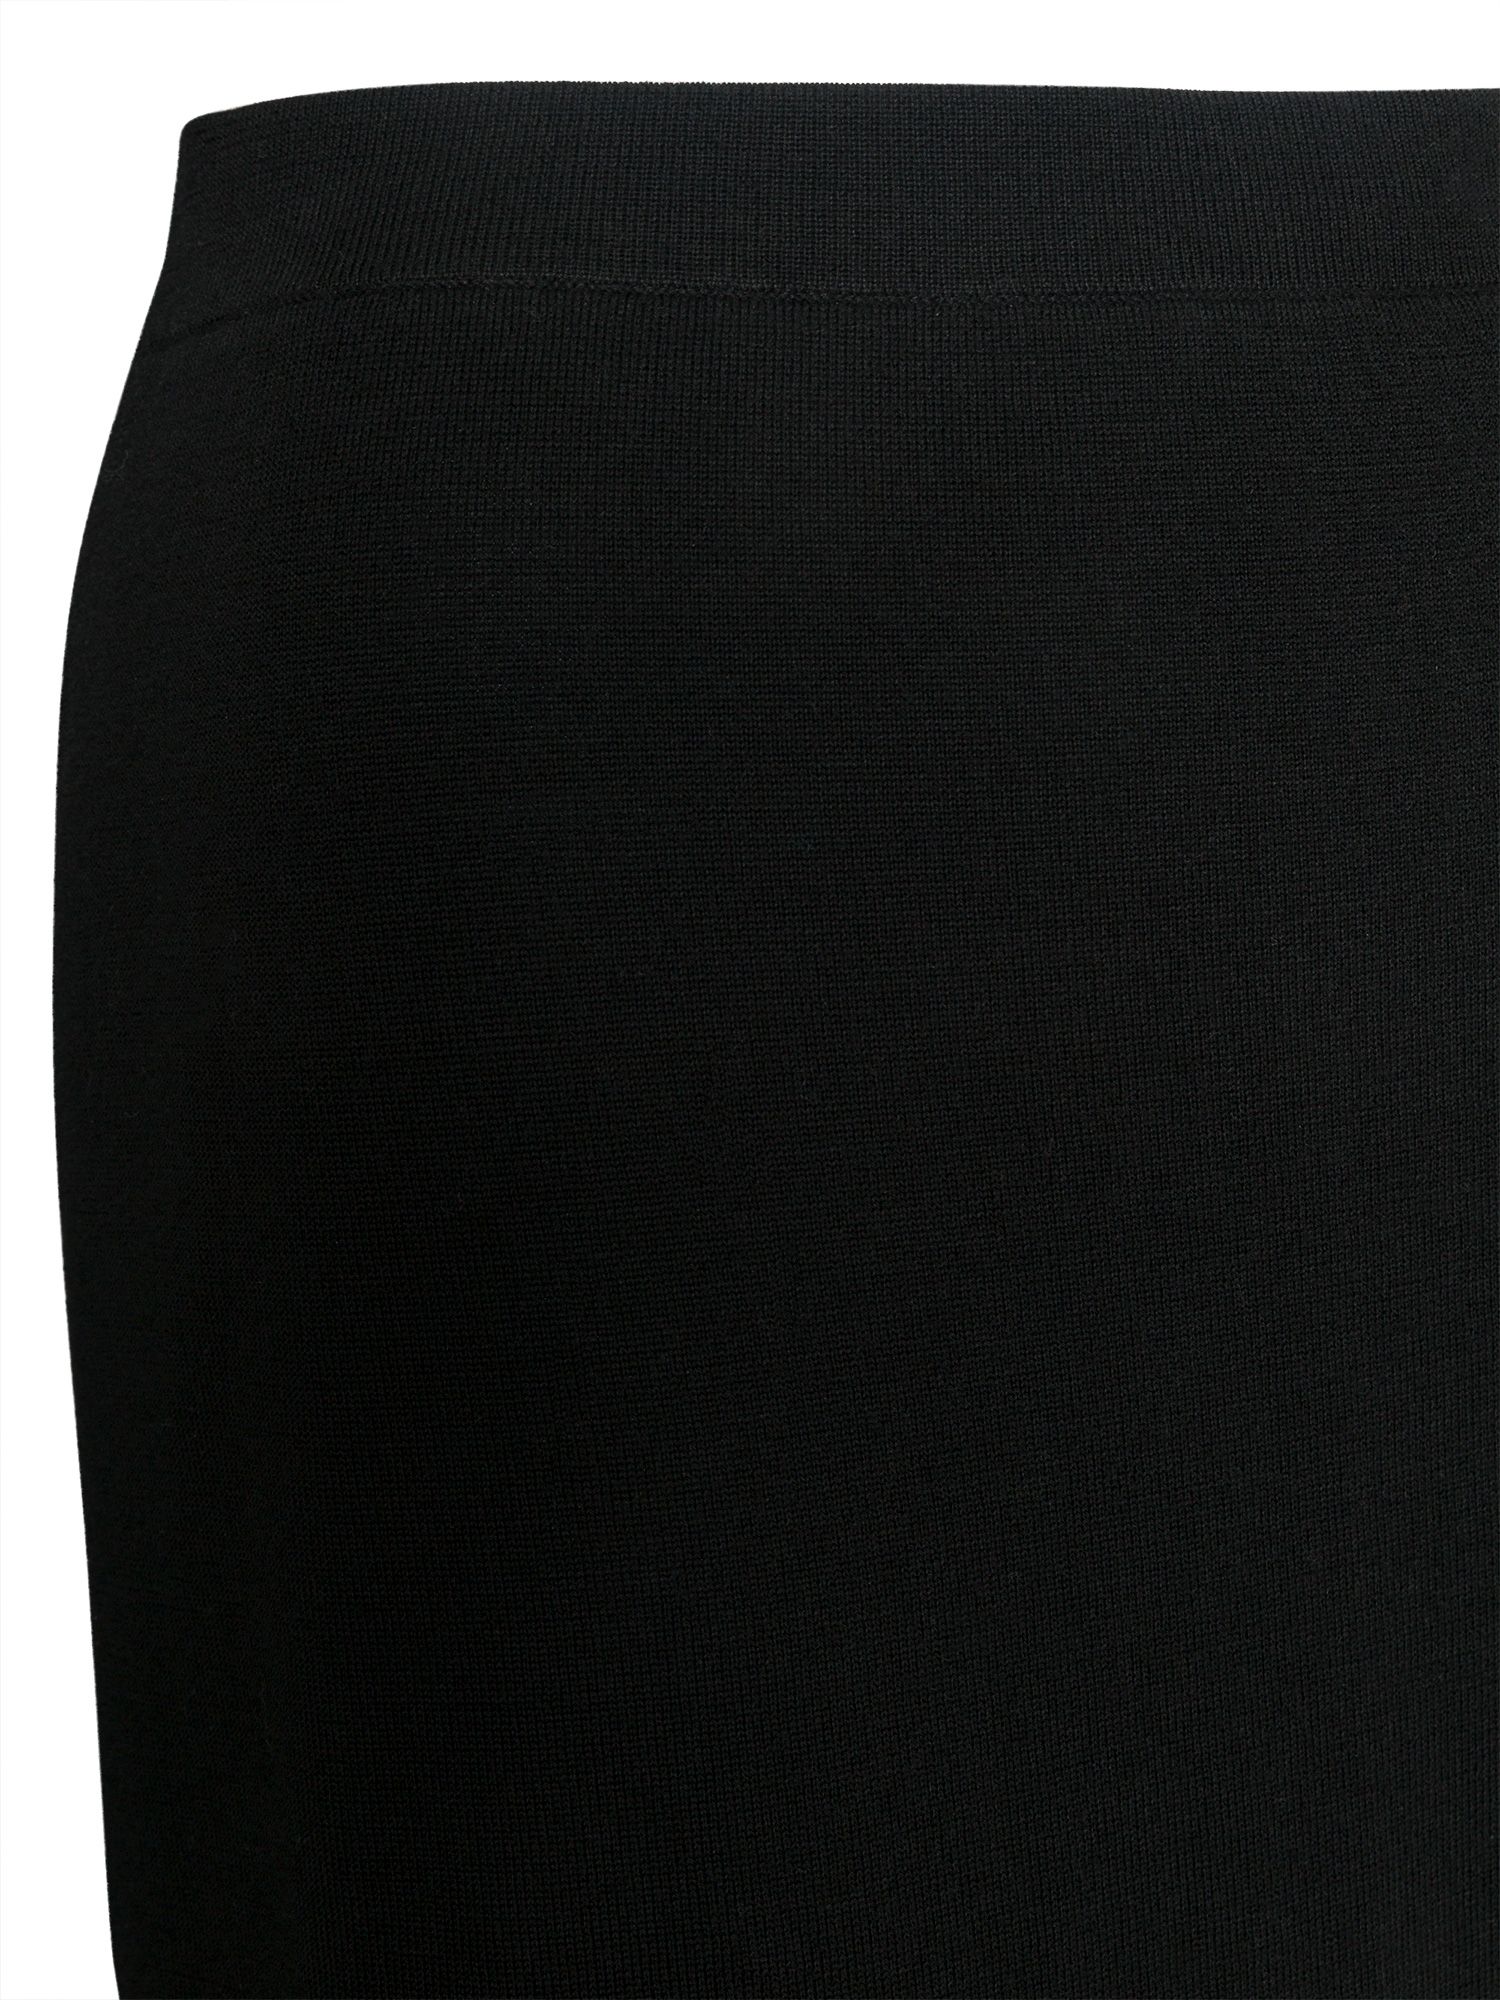 East Merino Wool Midi Pencil Skirt, Black